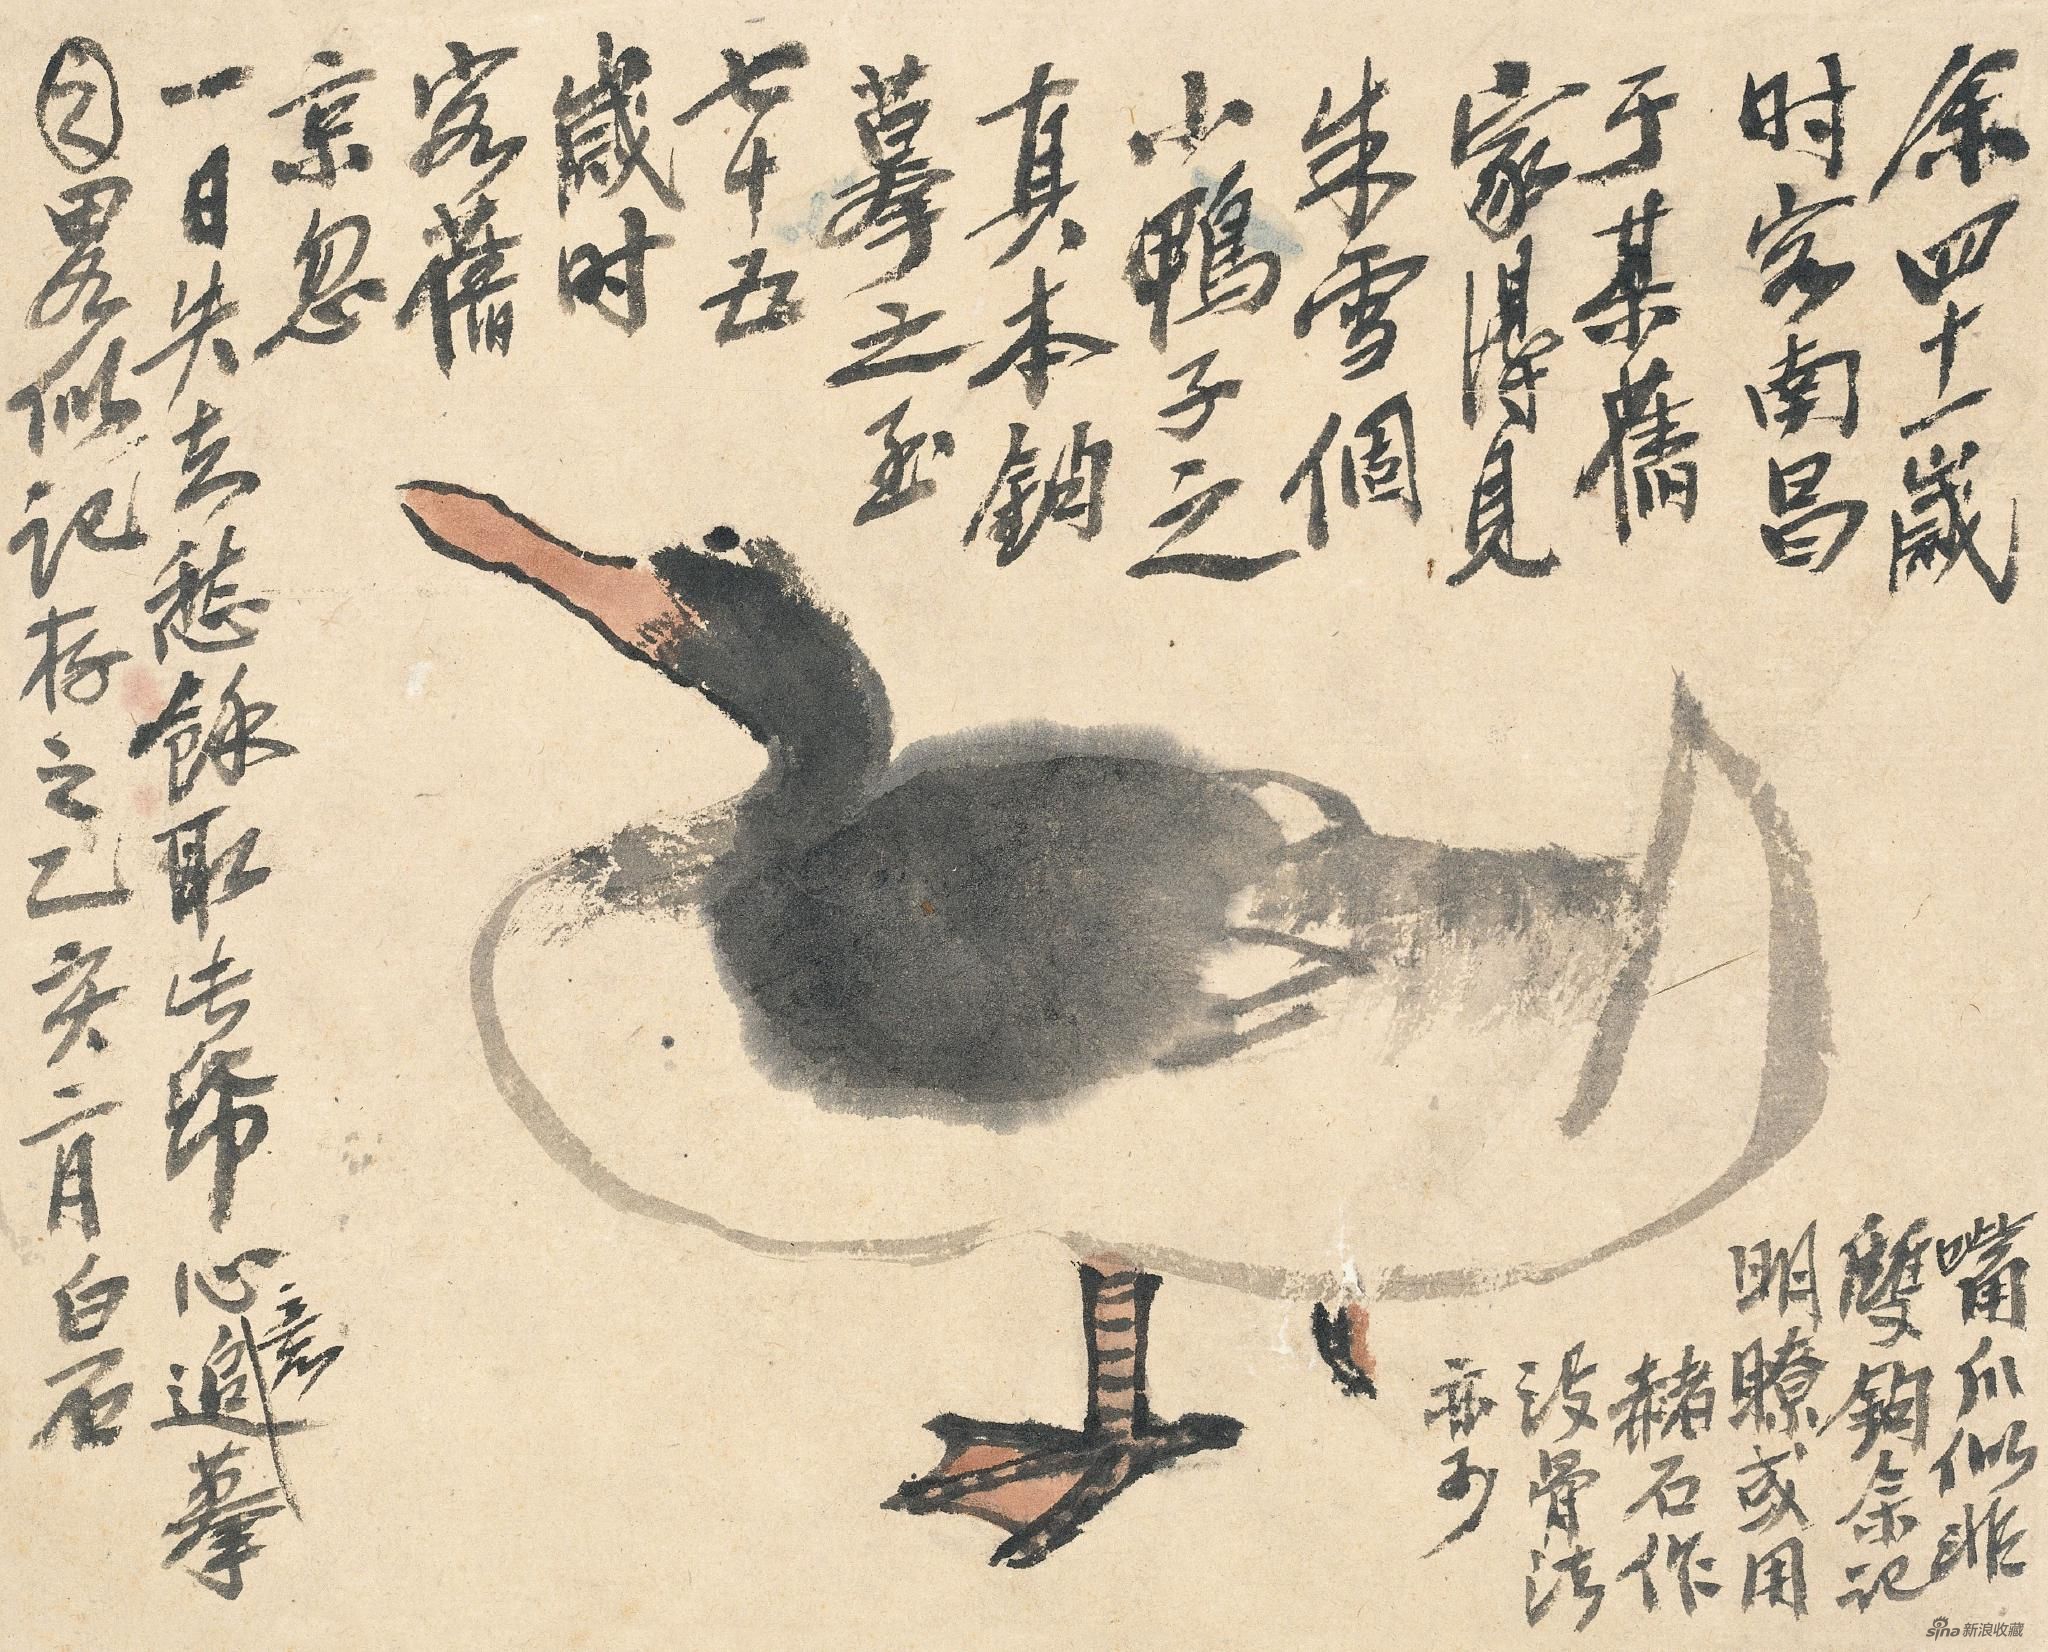 追摹八大山人鸭图 齐白石 25cm×31cm 纸本设色 1935年 北京画院藏